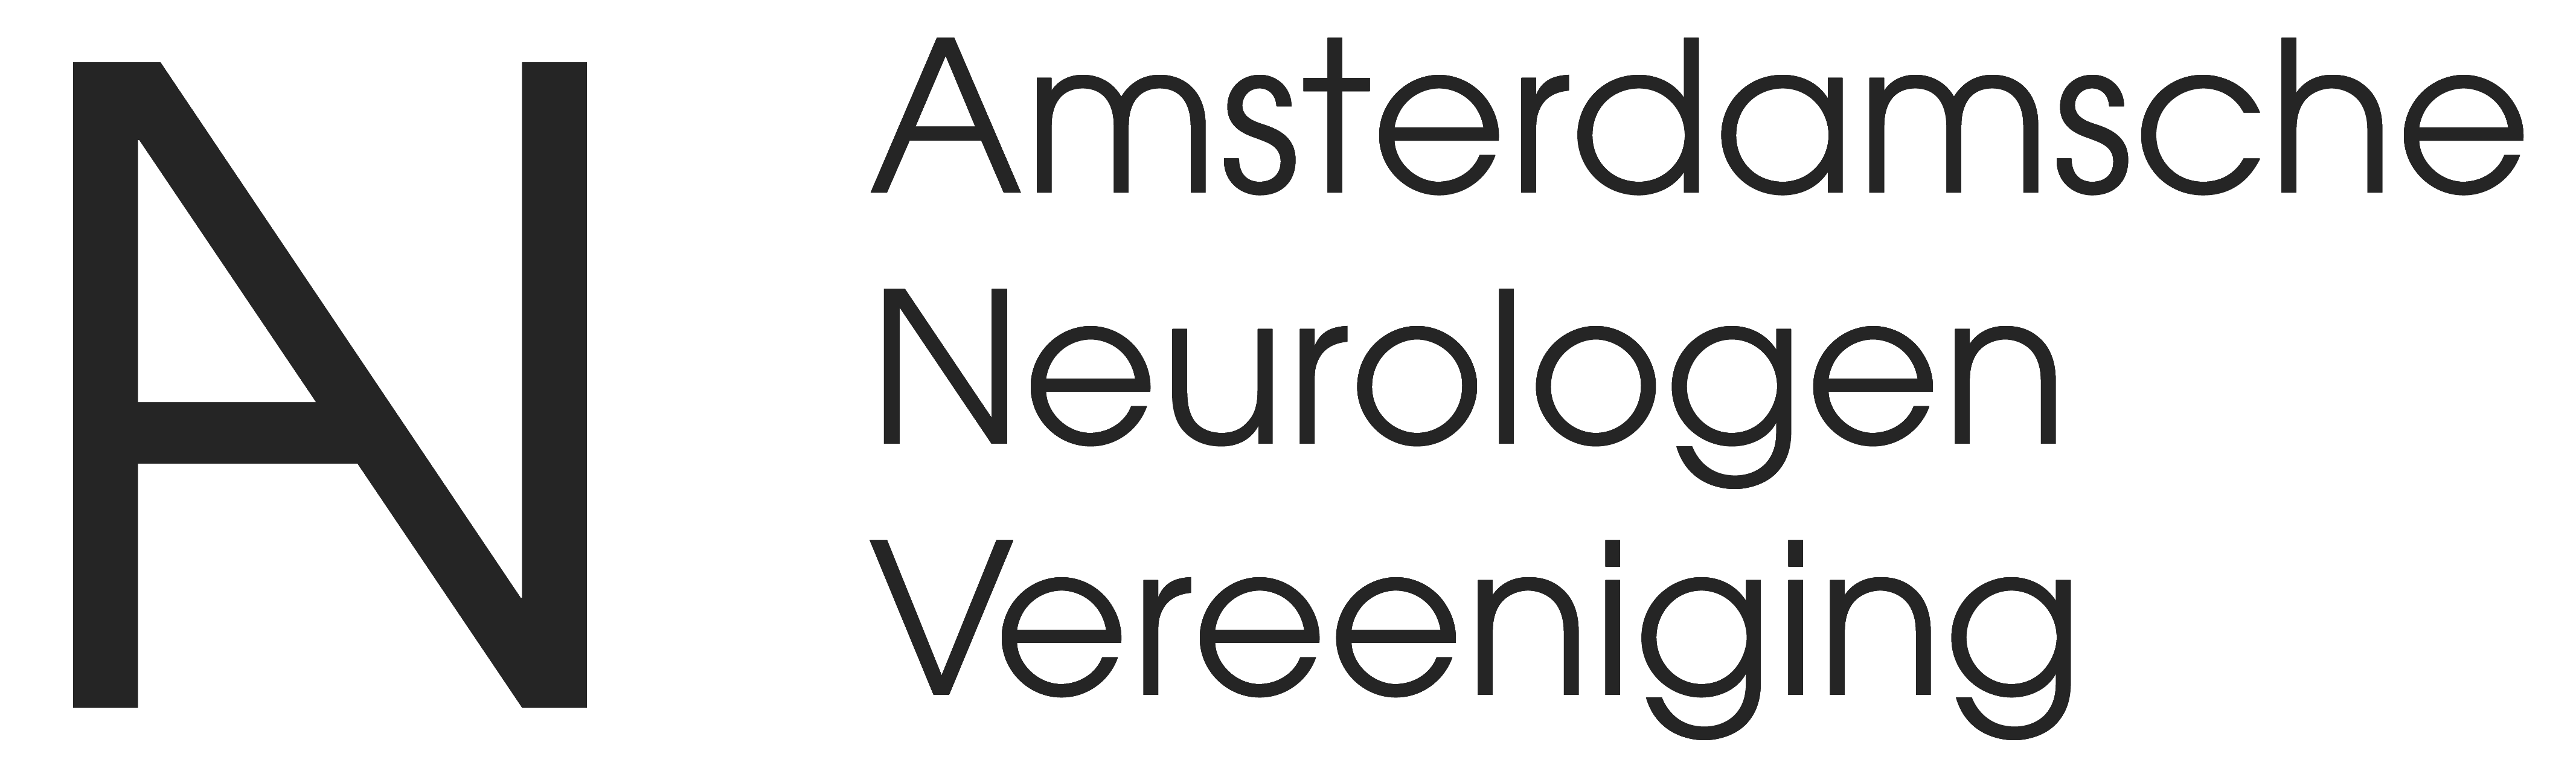 Amsterdamsche Neurologenvereeniging